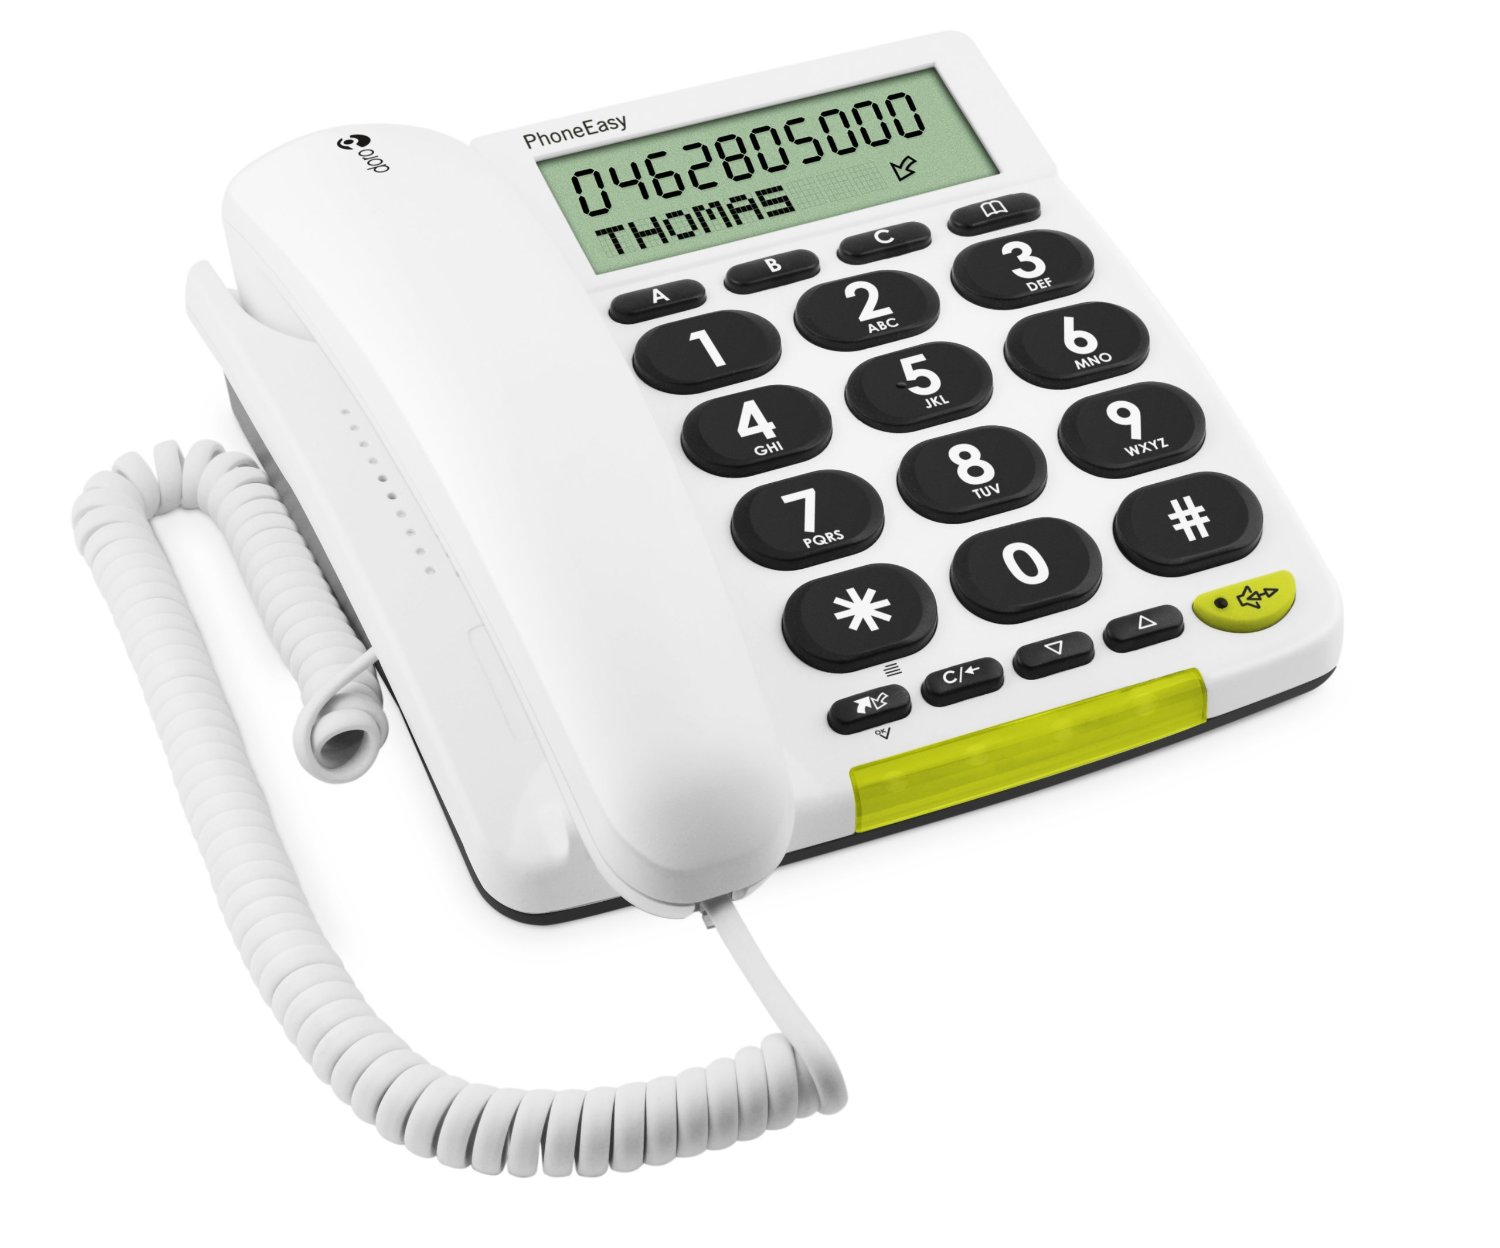 Doro PhoneEasy 312cs white telefons